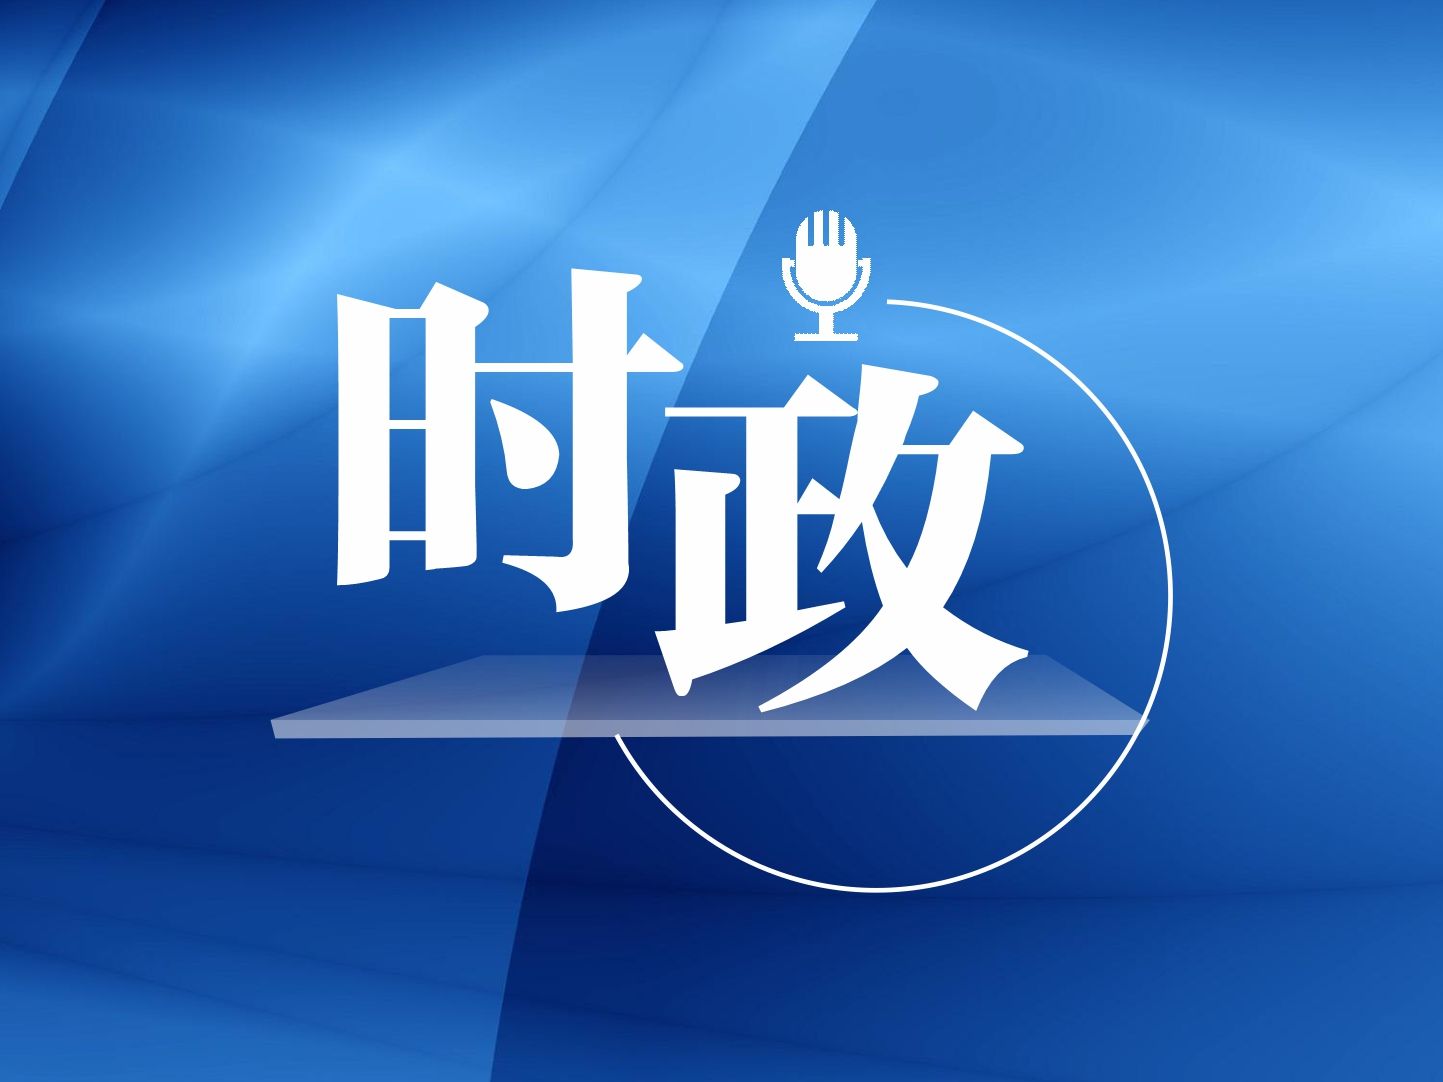 多国友好组织和人士谴责佩洛西窜访中国台湾地区 表示坚定支持一个中国原则